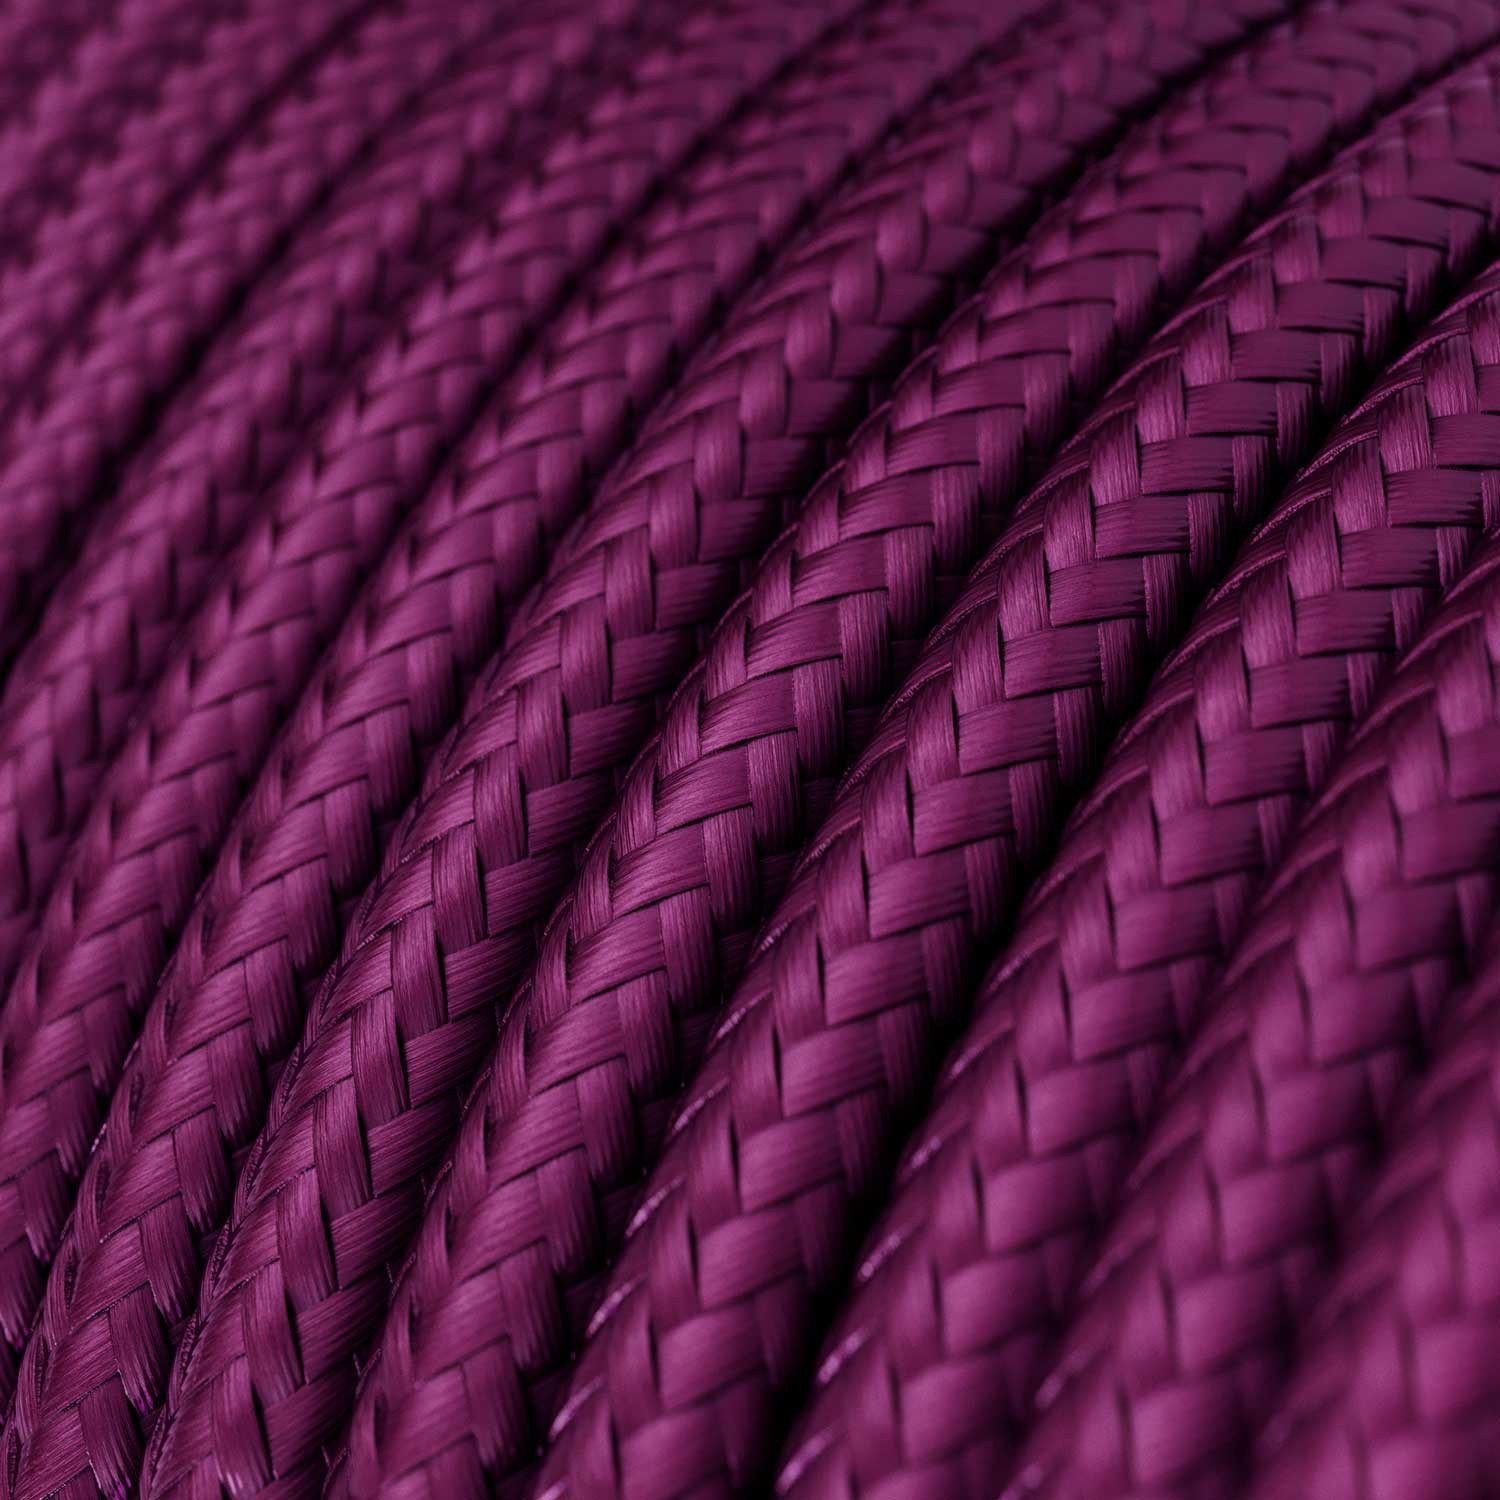 Cable Eléctrico Redondo recubierto en tejido de Rayón Color Sólido Ultravioleta RM35